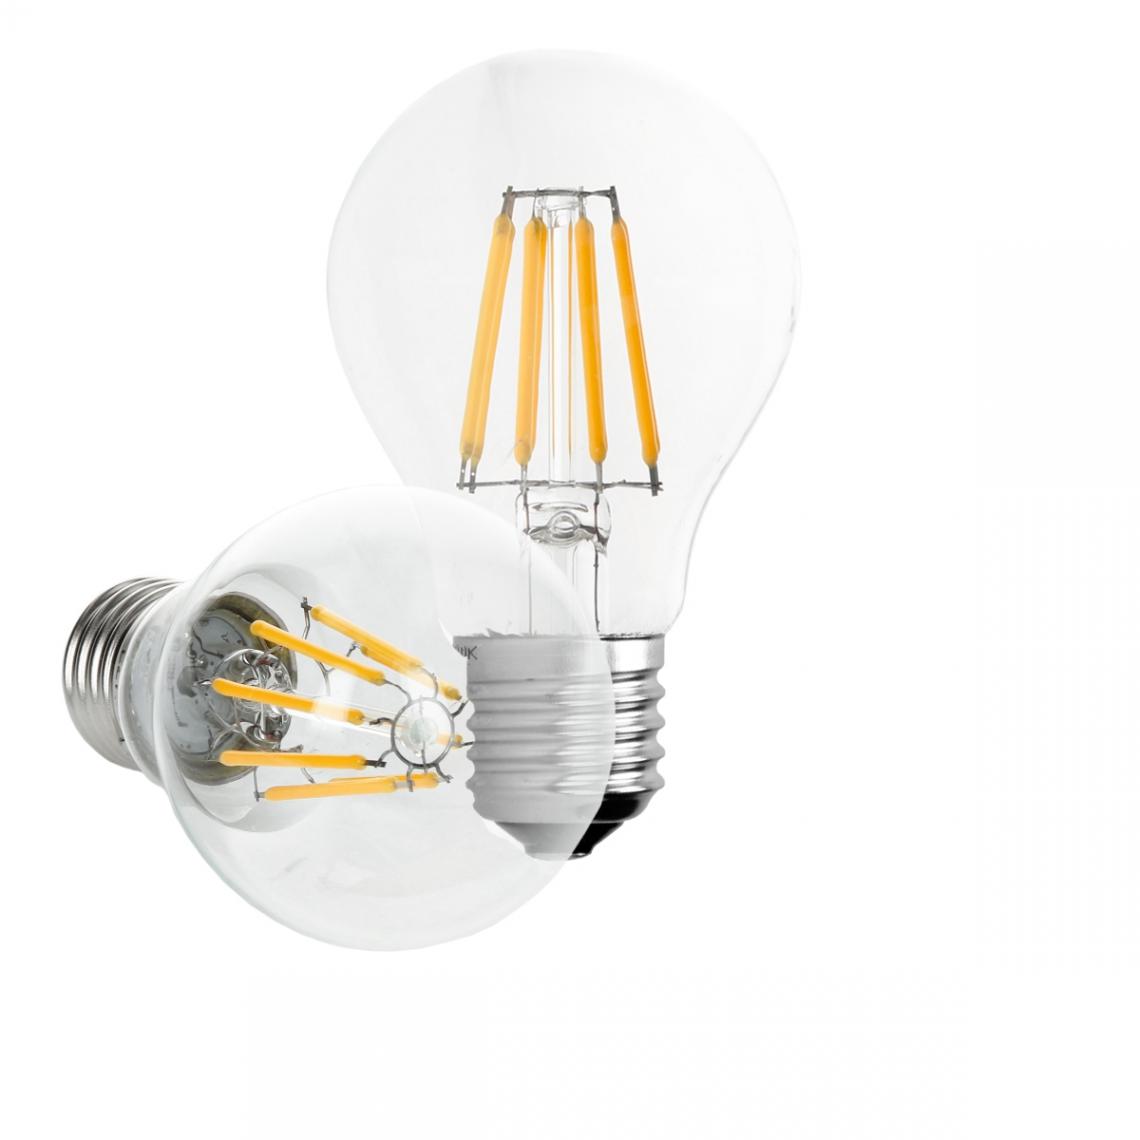 Ecd Germany - ECD Germany 6 x LED Filament de l'ampoule E27 classique Edison 8W 816 lumens angle de faisceau 120 ° AC 220-240 reste caché et remplace environ 45W lampe incandescente Blanc Chaud - Ampoules LED